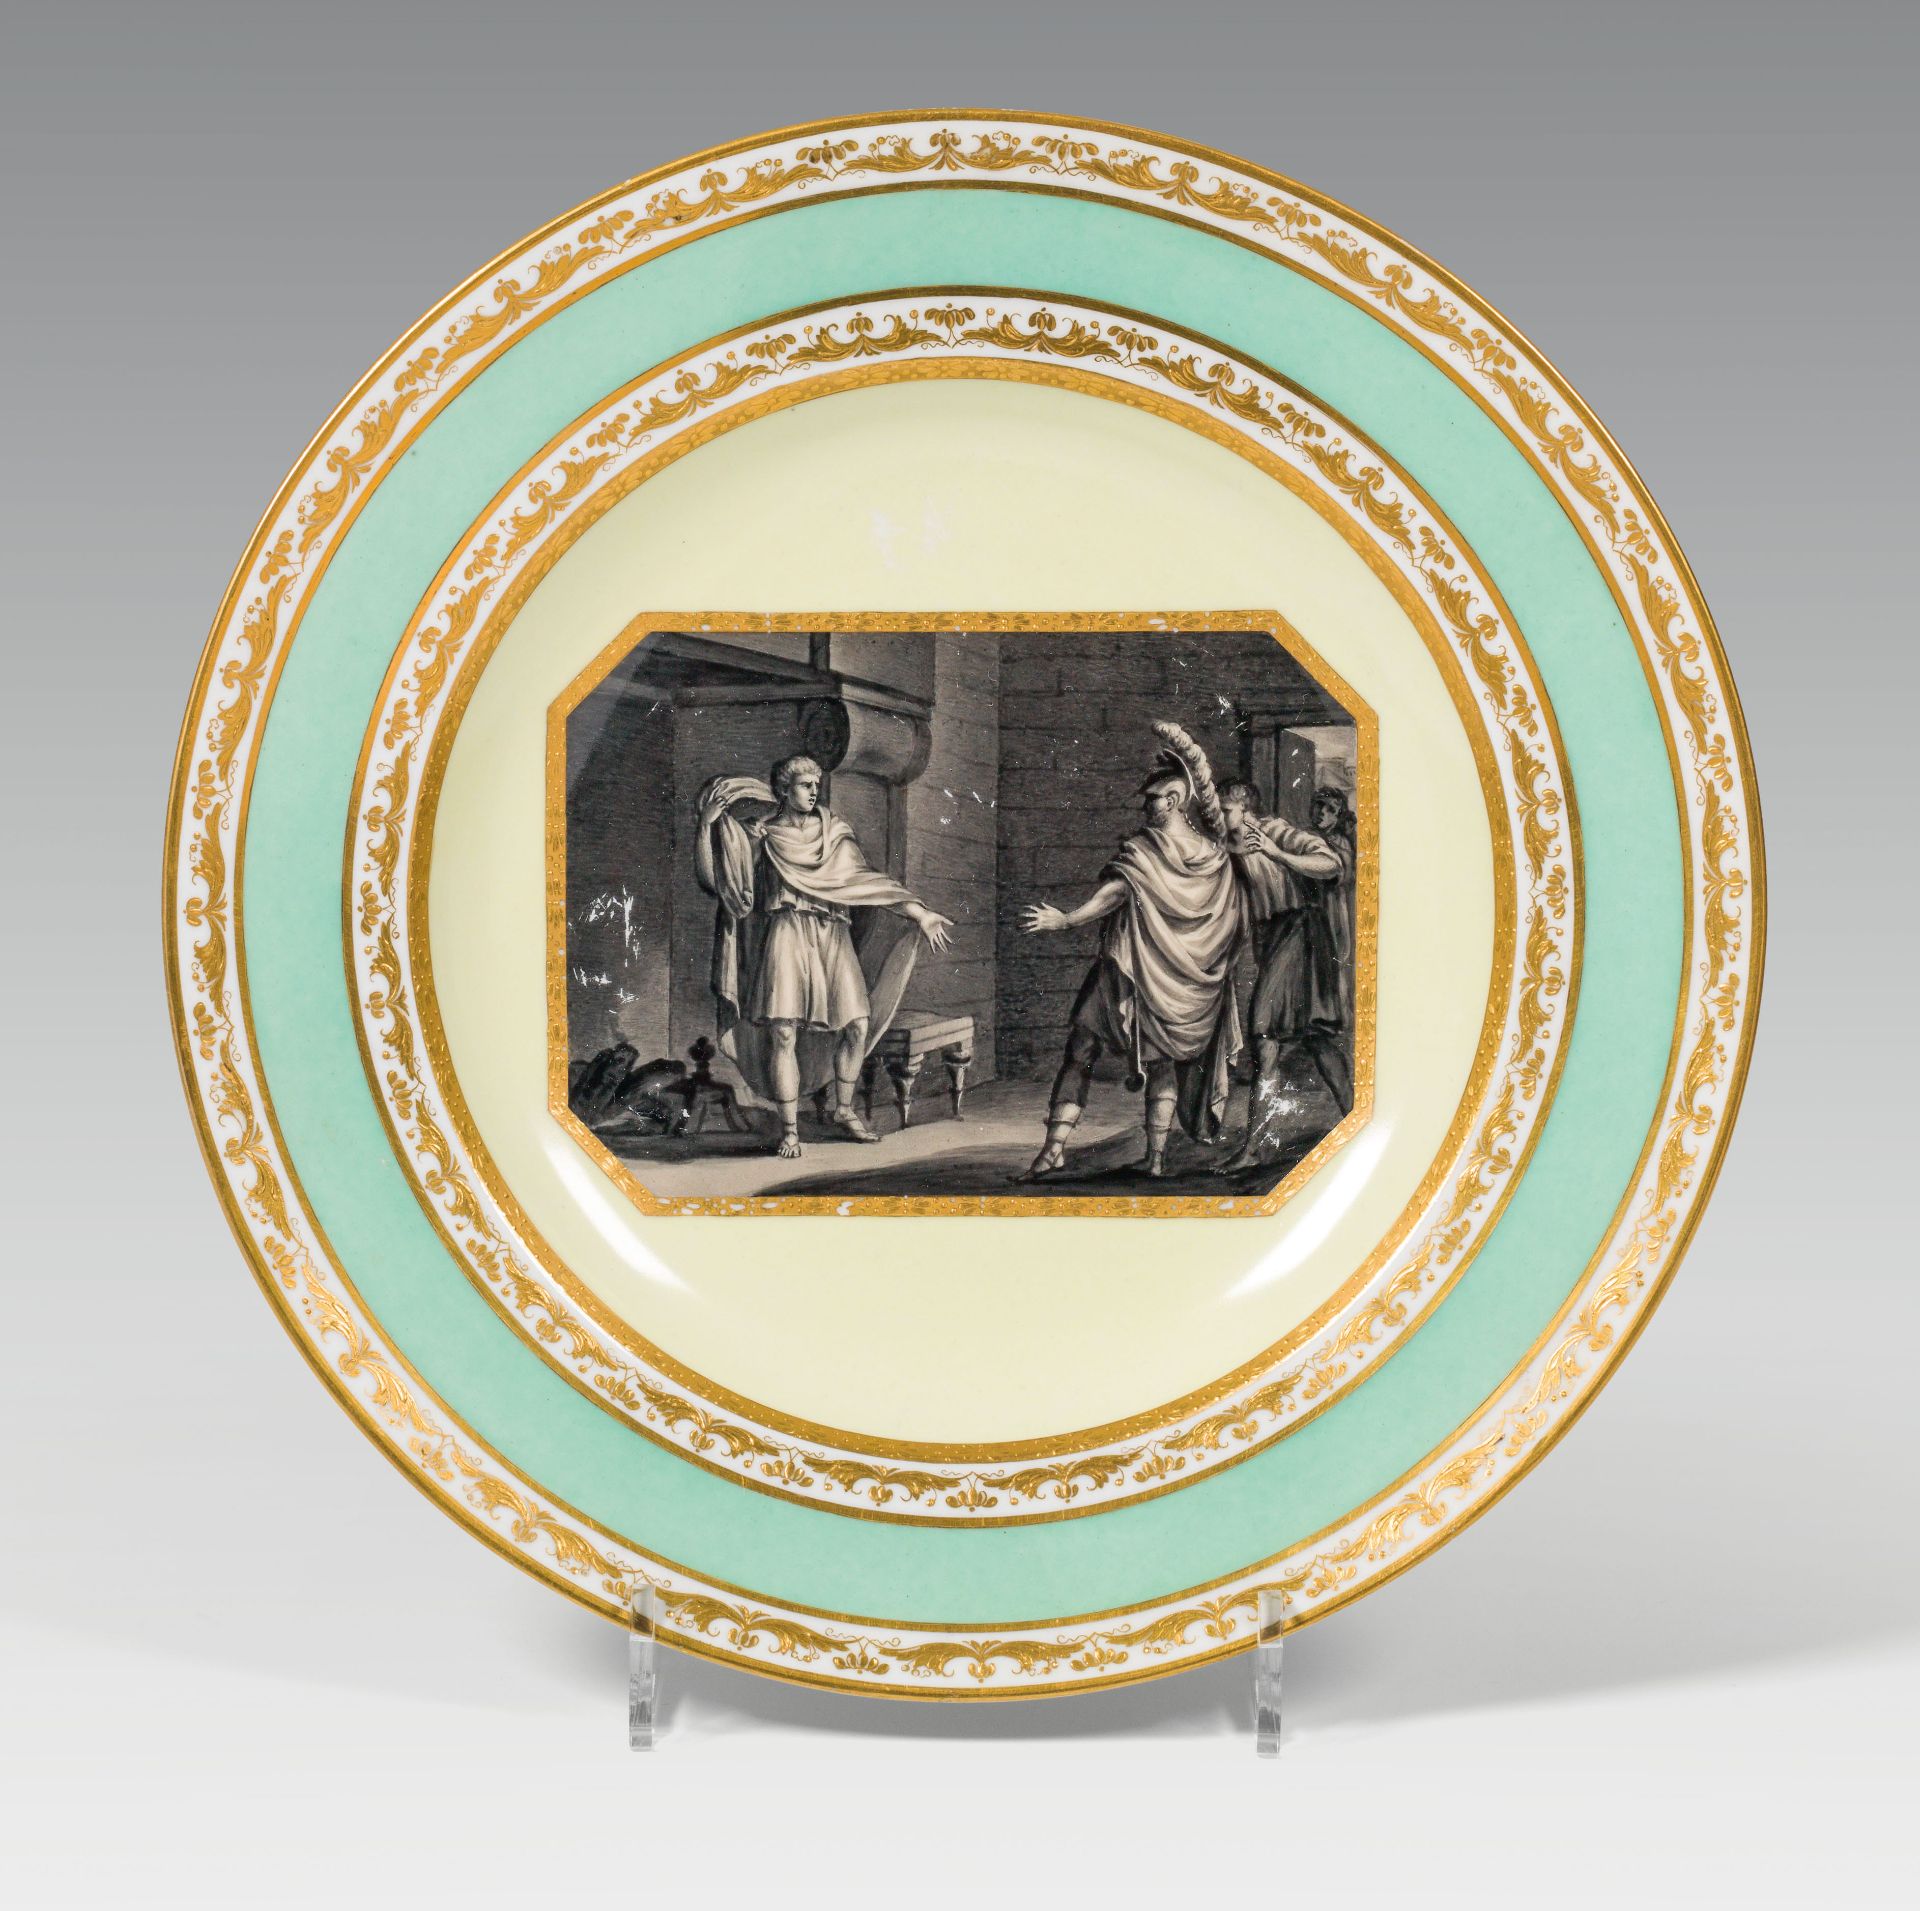 Plate "Coriolanus"